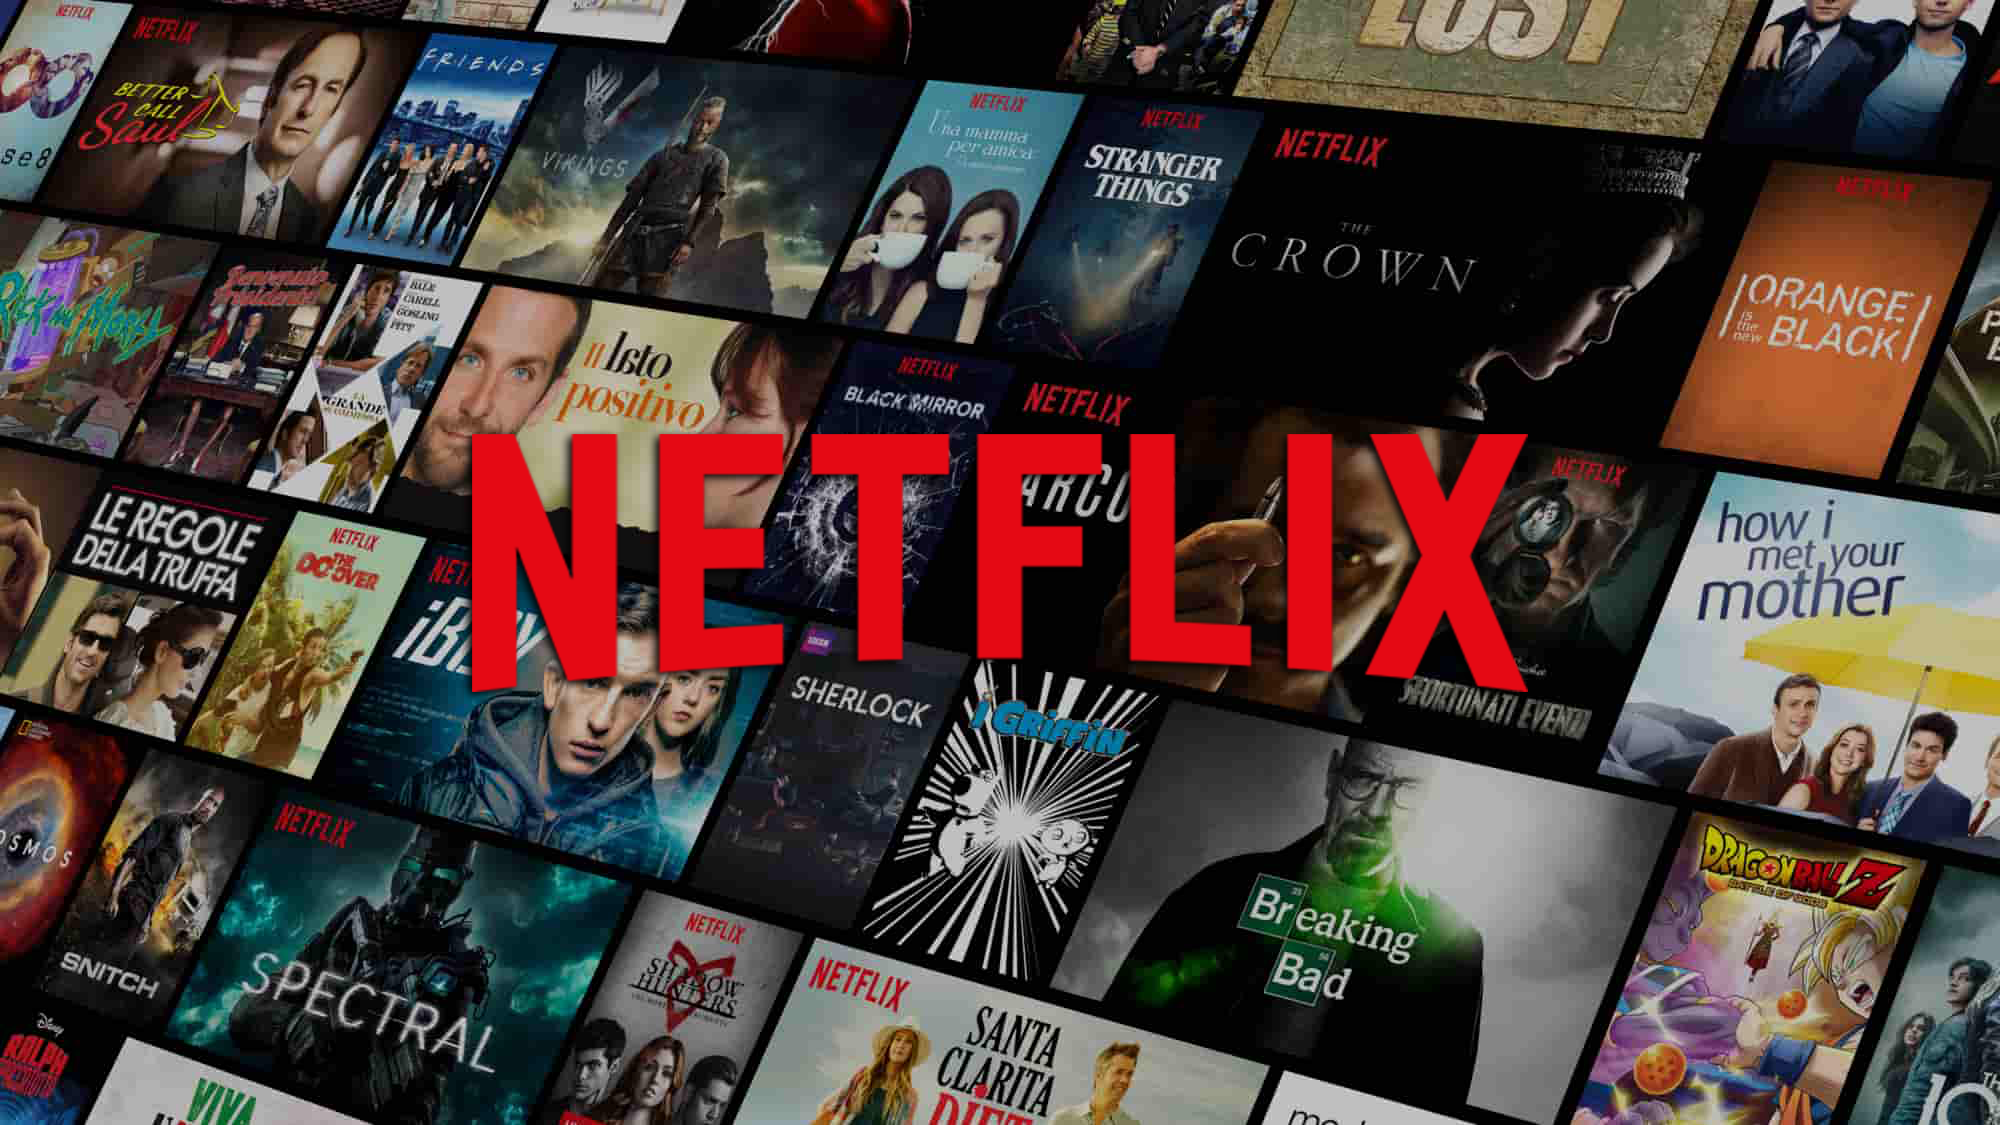 Come accedere alle categorie segrete di Netflix